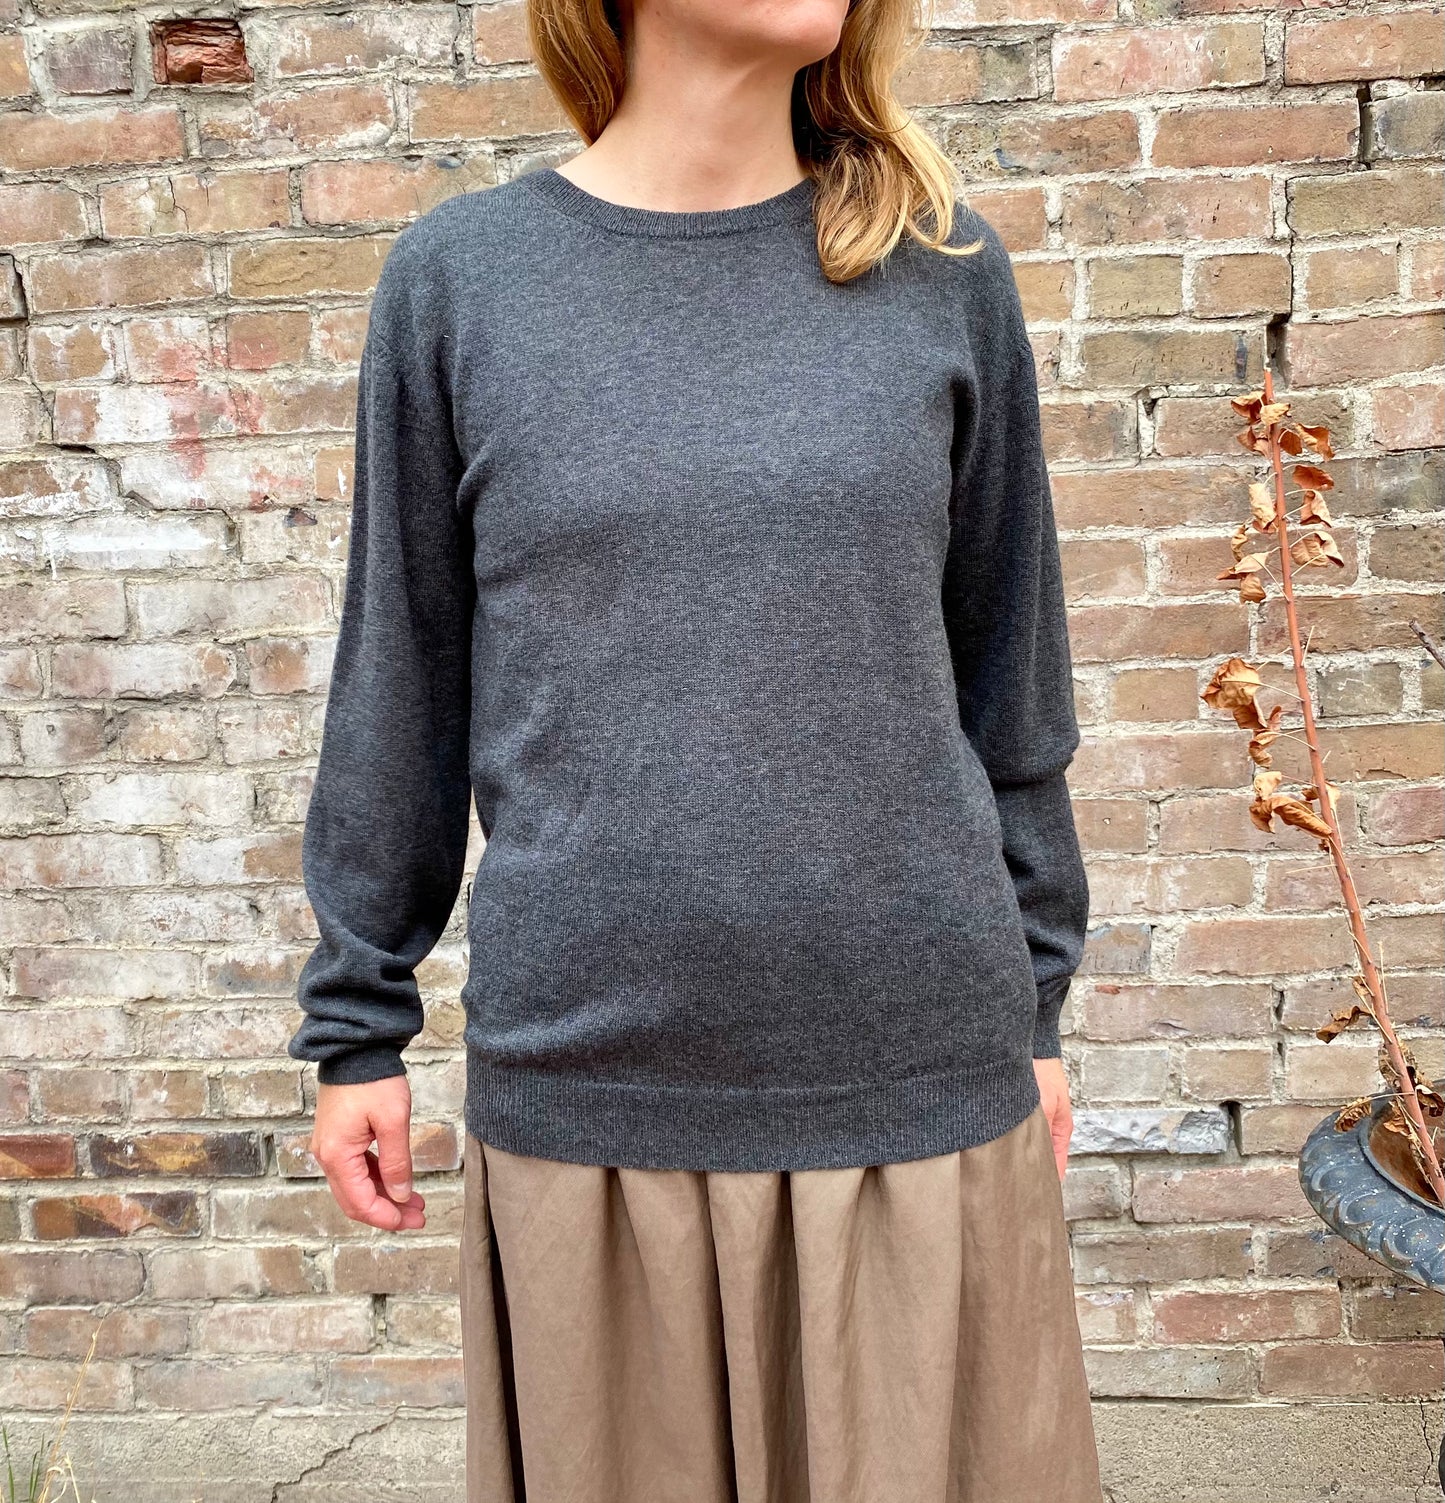 Dinadi Merino Wool Unisex Sweater in Charcoal Grey made in Nepal 